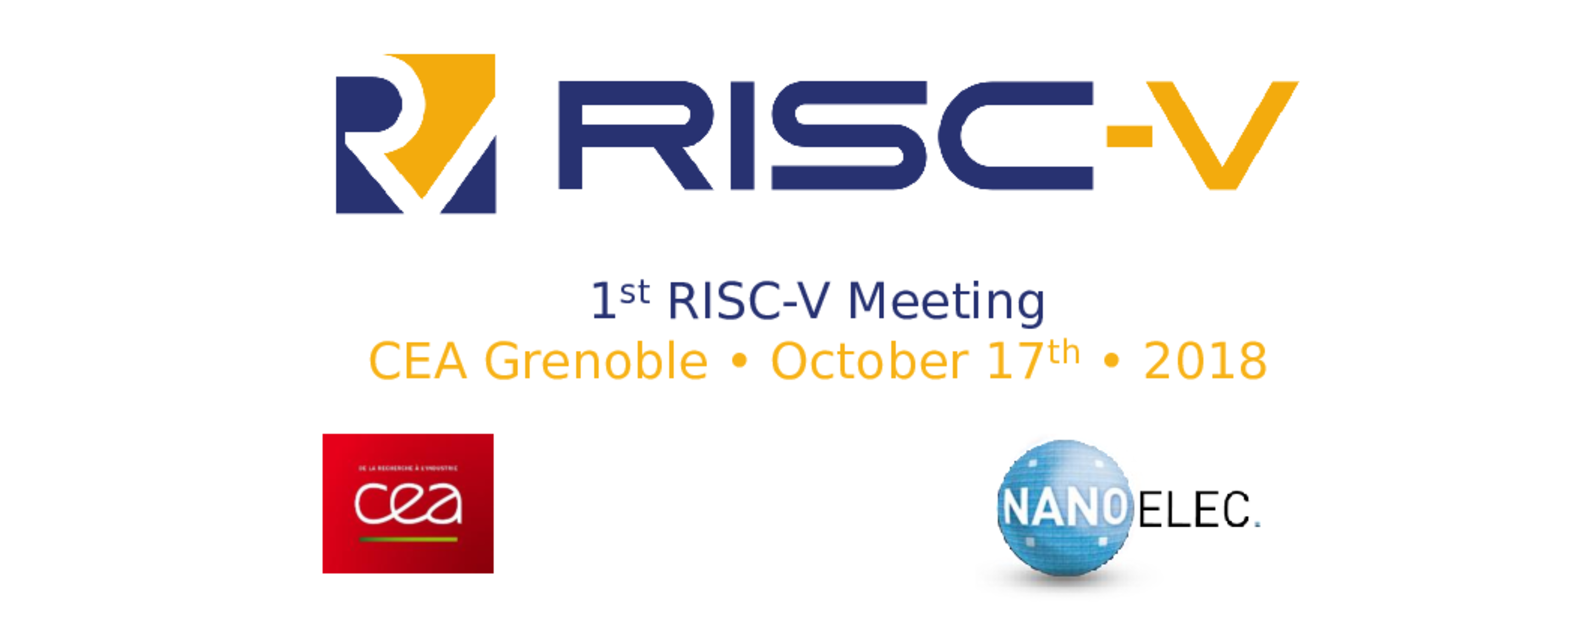 RISC-V Meetings Banner